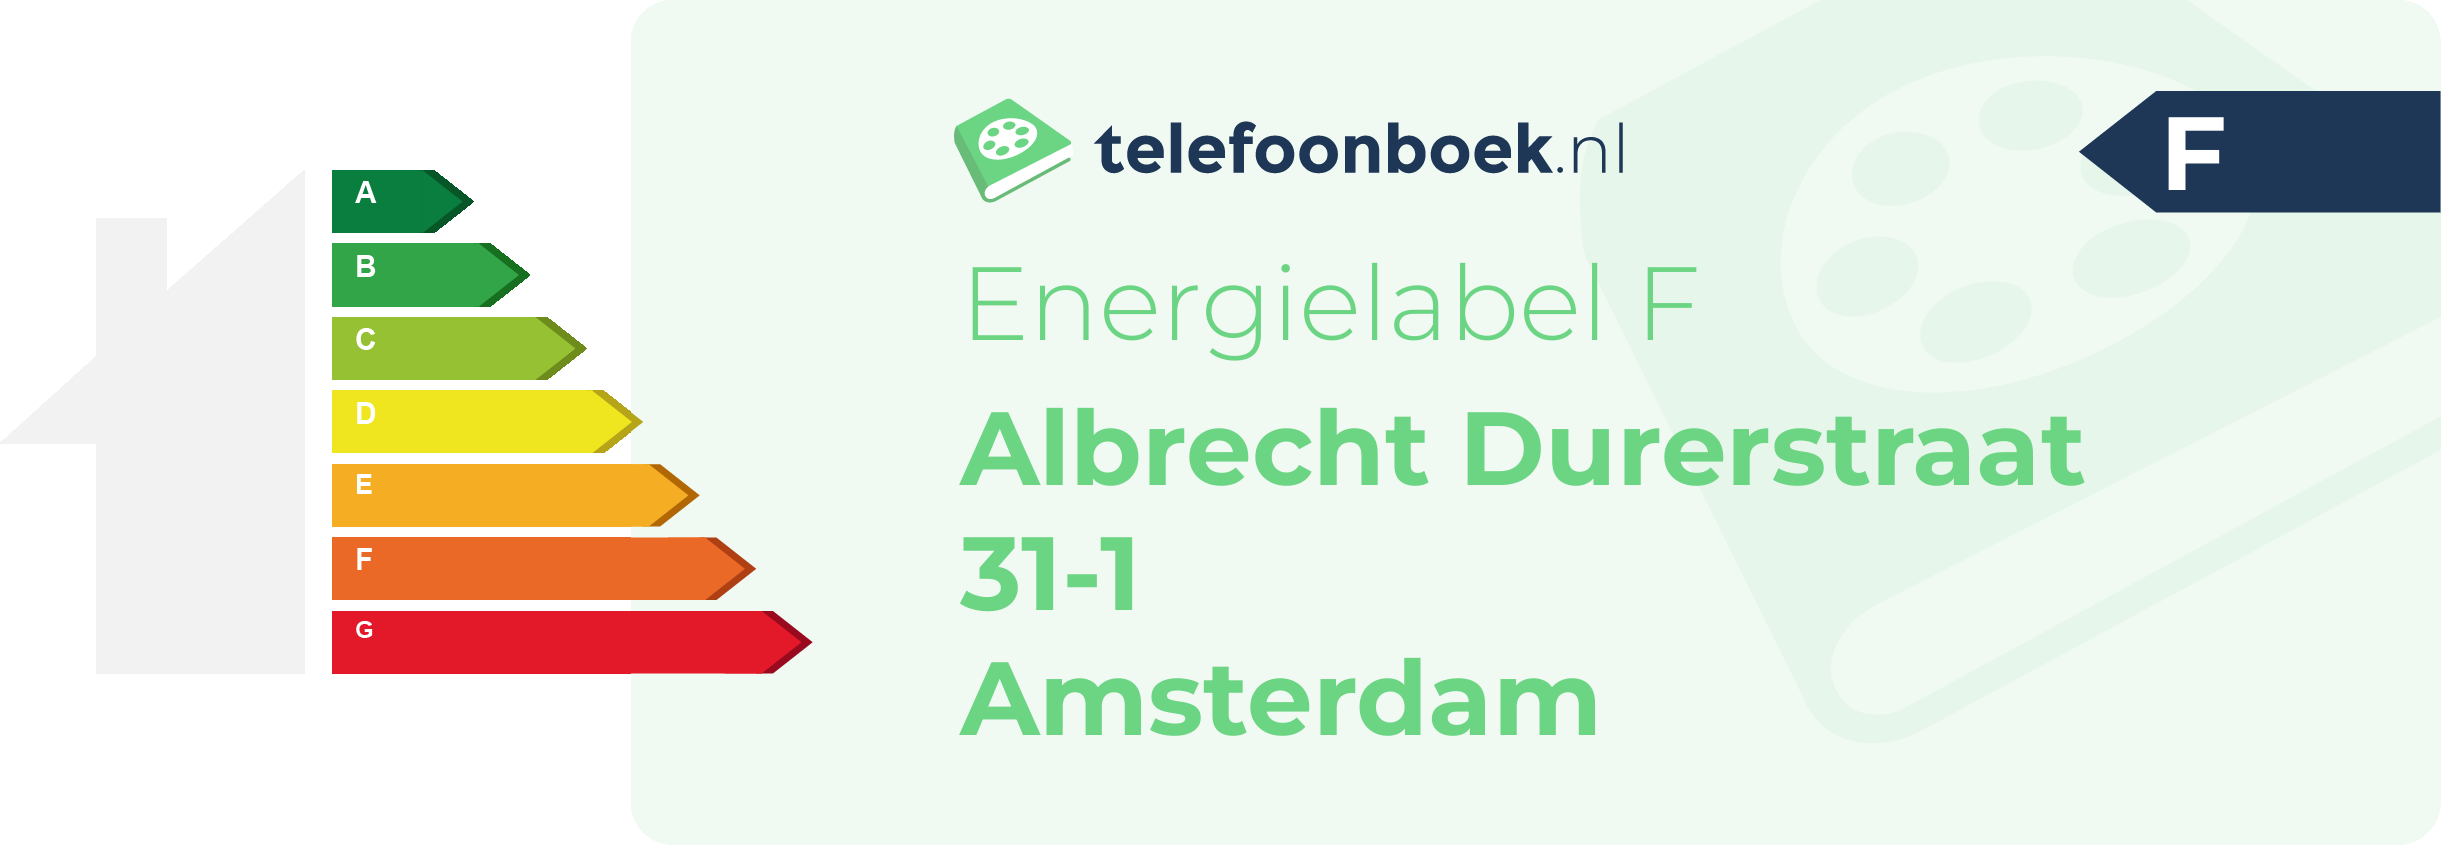 Energielabel Albrecht Durerstraat 31-1 Amsterdam